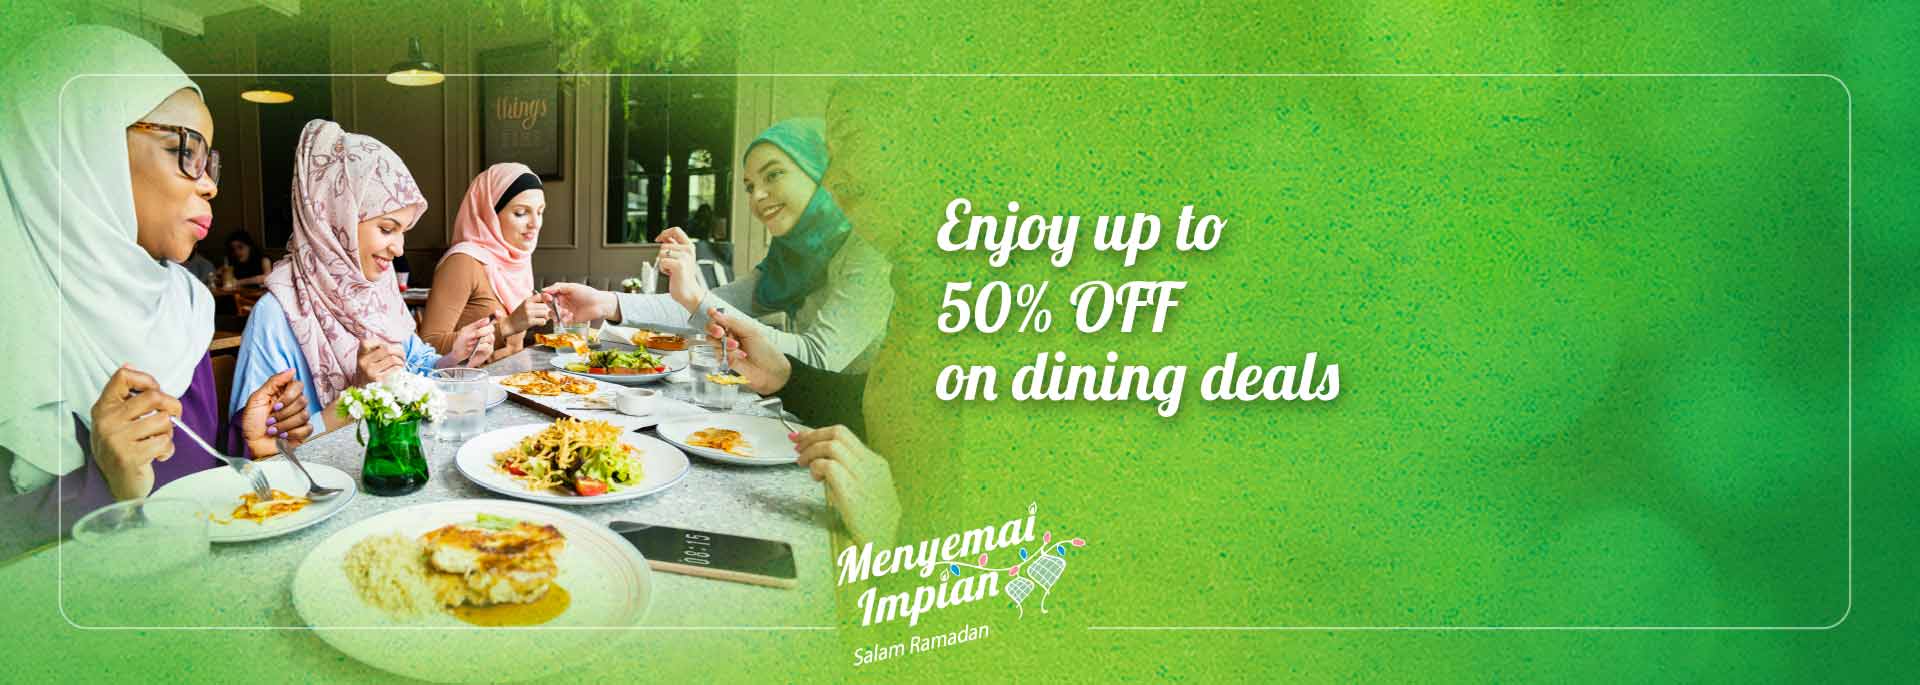 ramadan dining deals banner